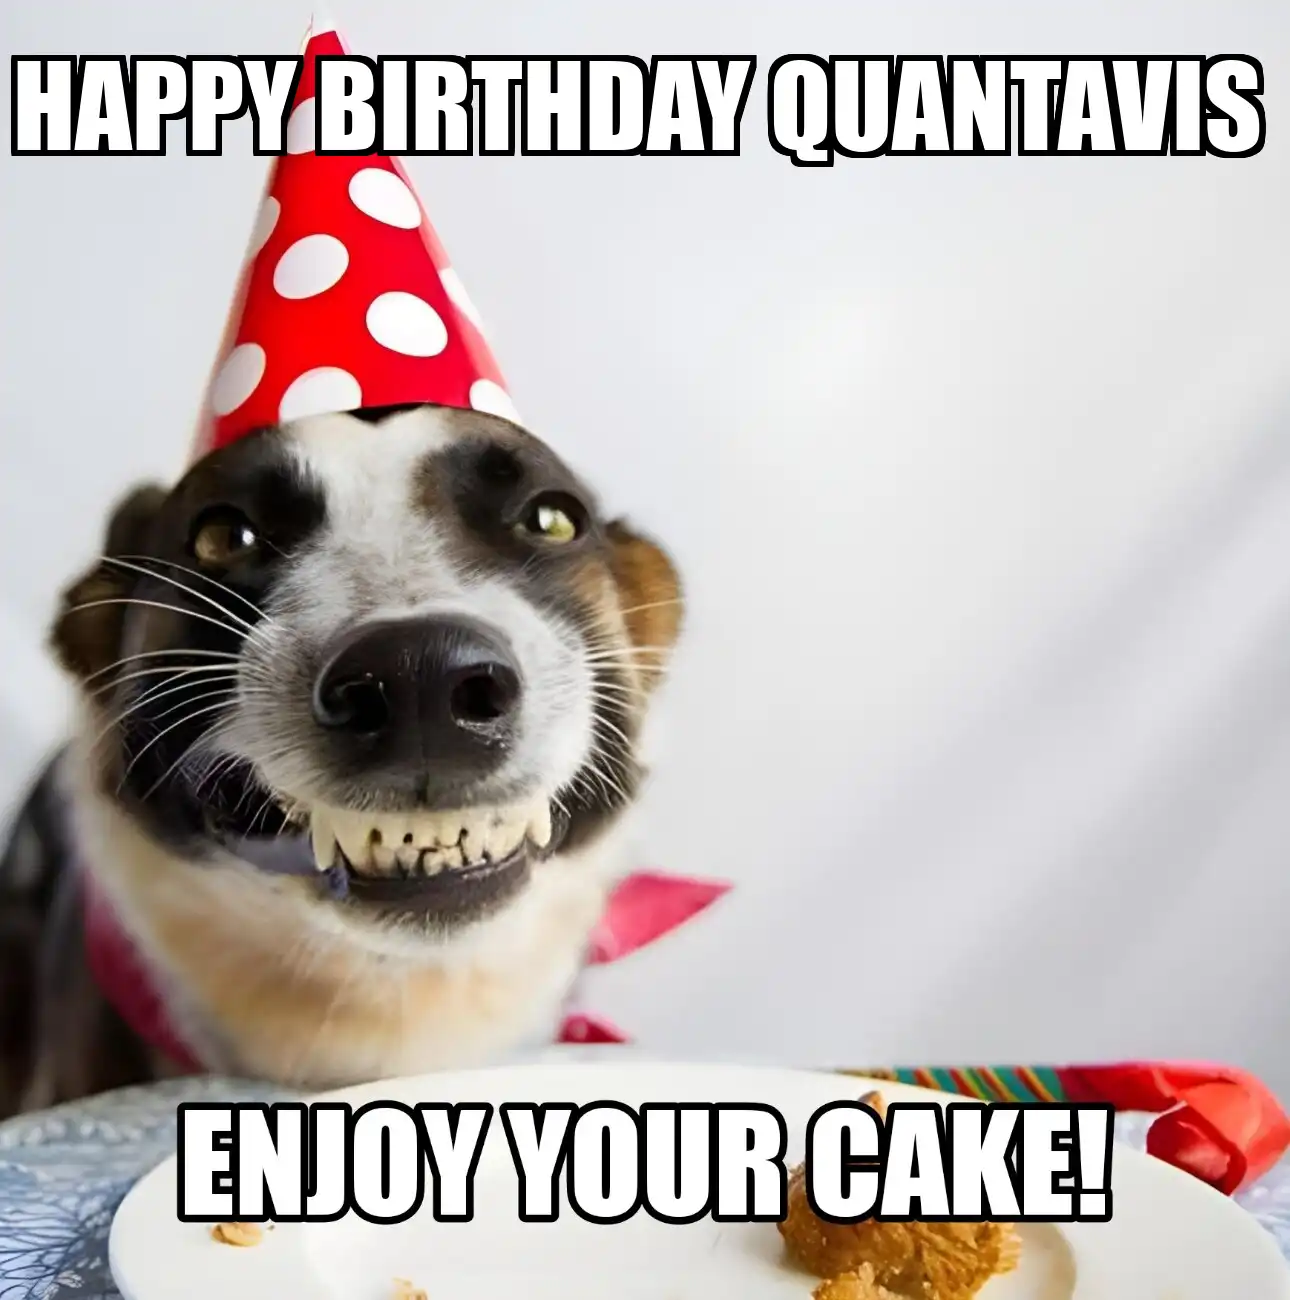 Happy Birthday Quantavis Enjoy Your Cake Dog Meme